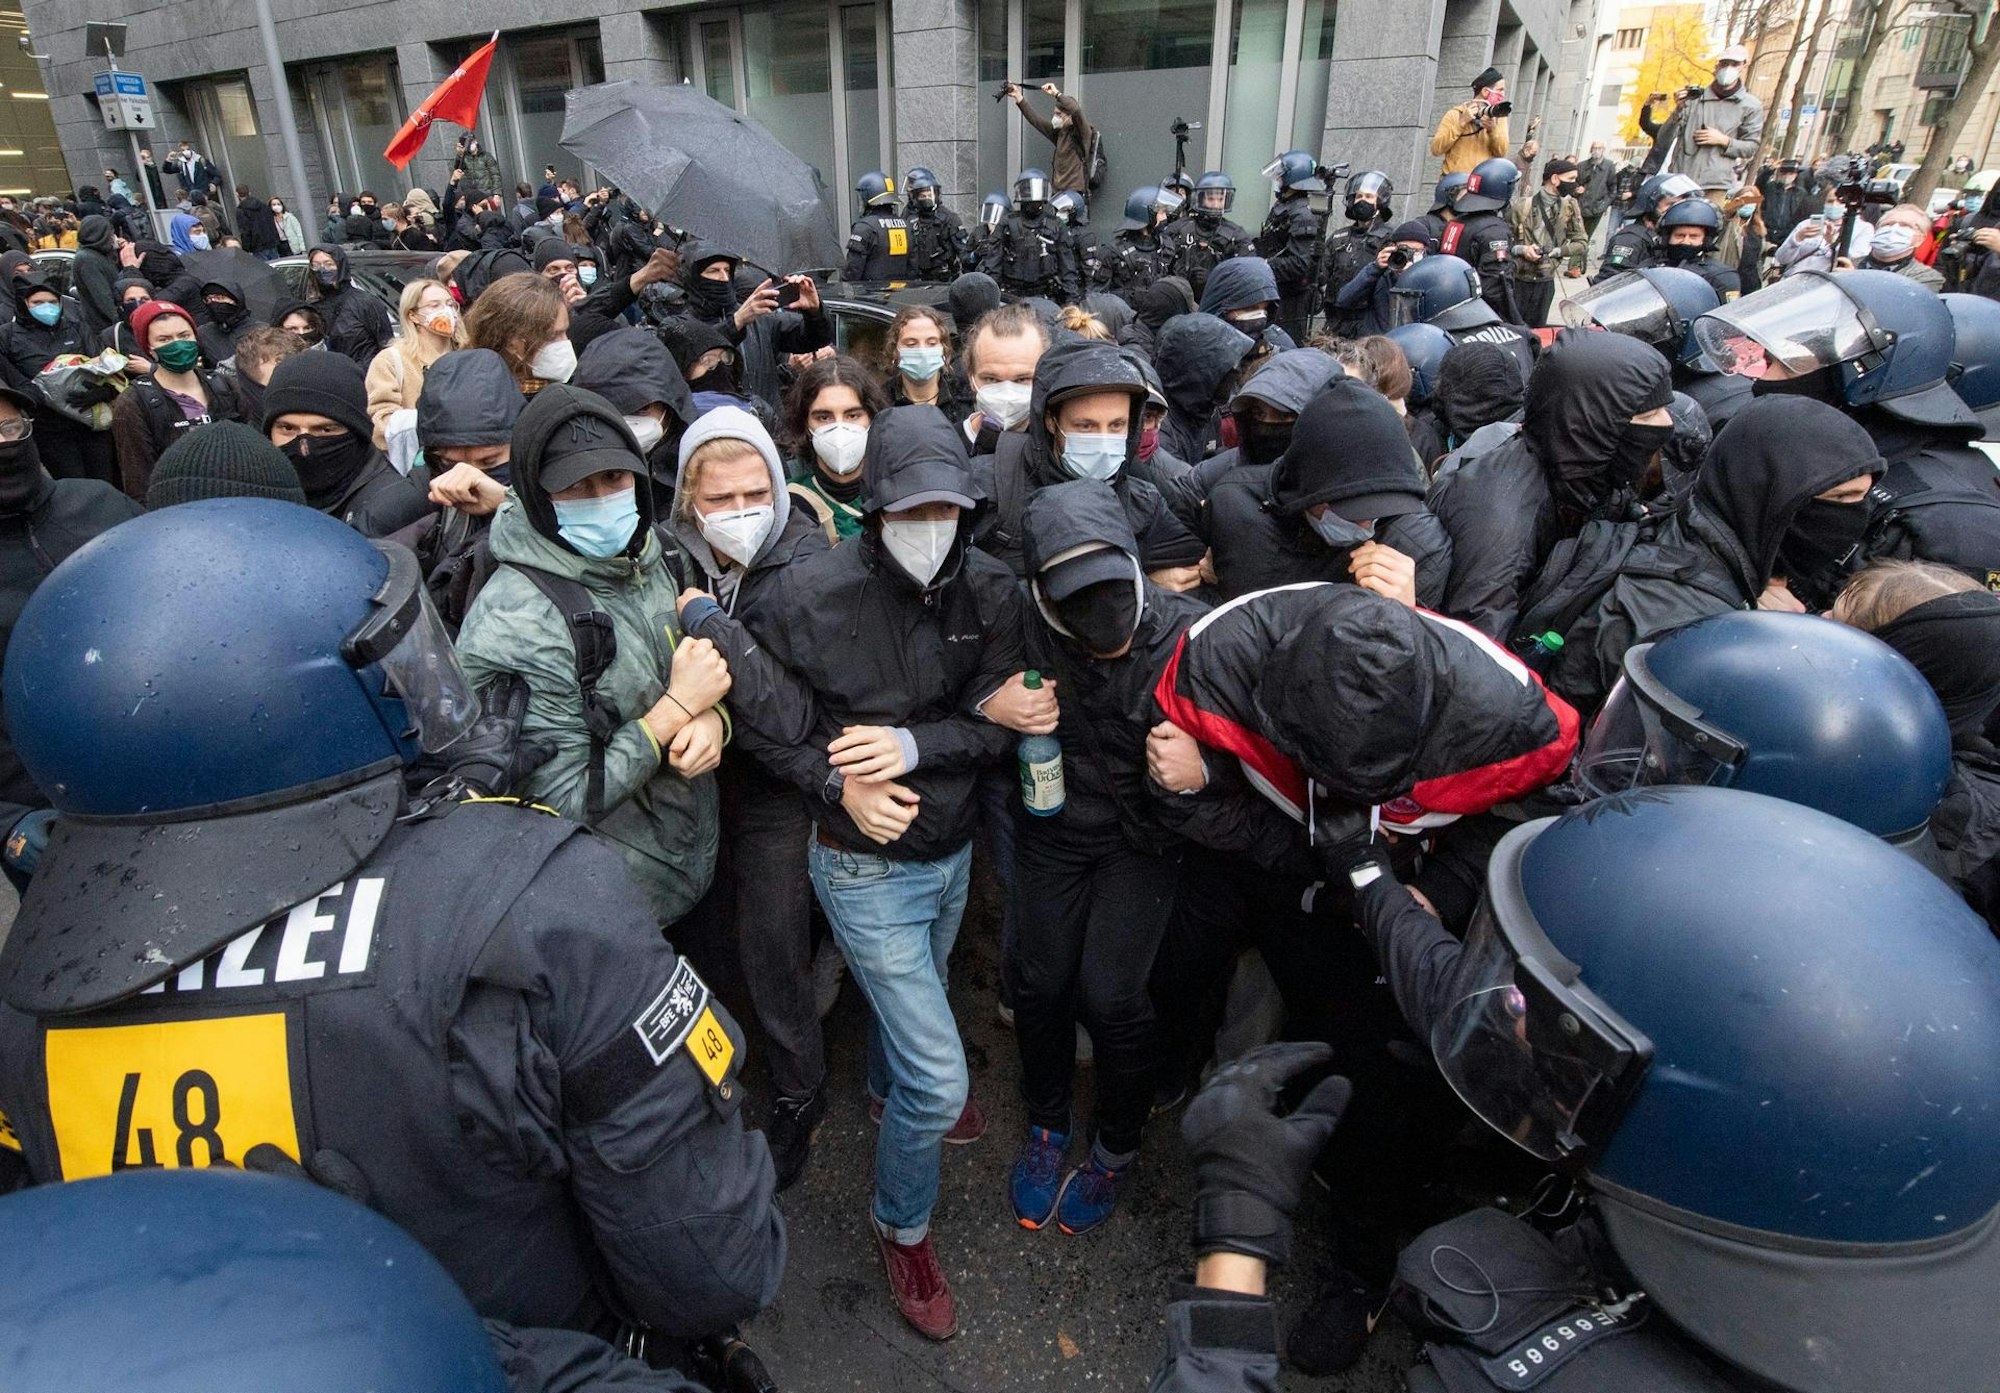 Polizisten setzten während der „Querdenken”-Demonstration in Frankfurt/Main am Samstag (14.11) vereinzelt Schlagstöcke gegen Gegendemonstranten ein. Nach Angaben der Polizei wurden Beamte angegriffen.